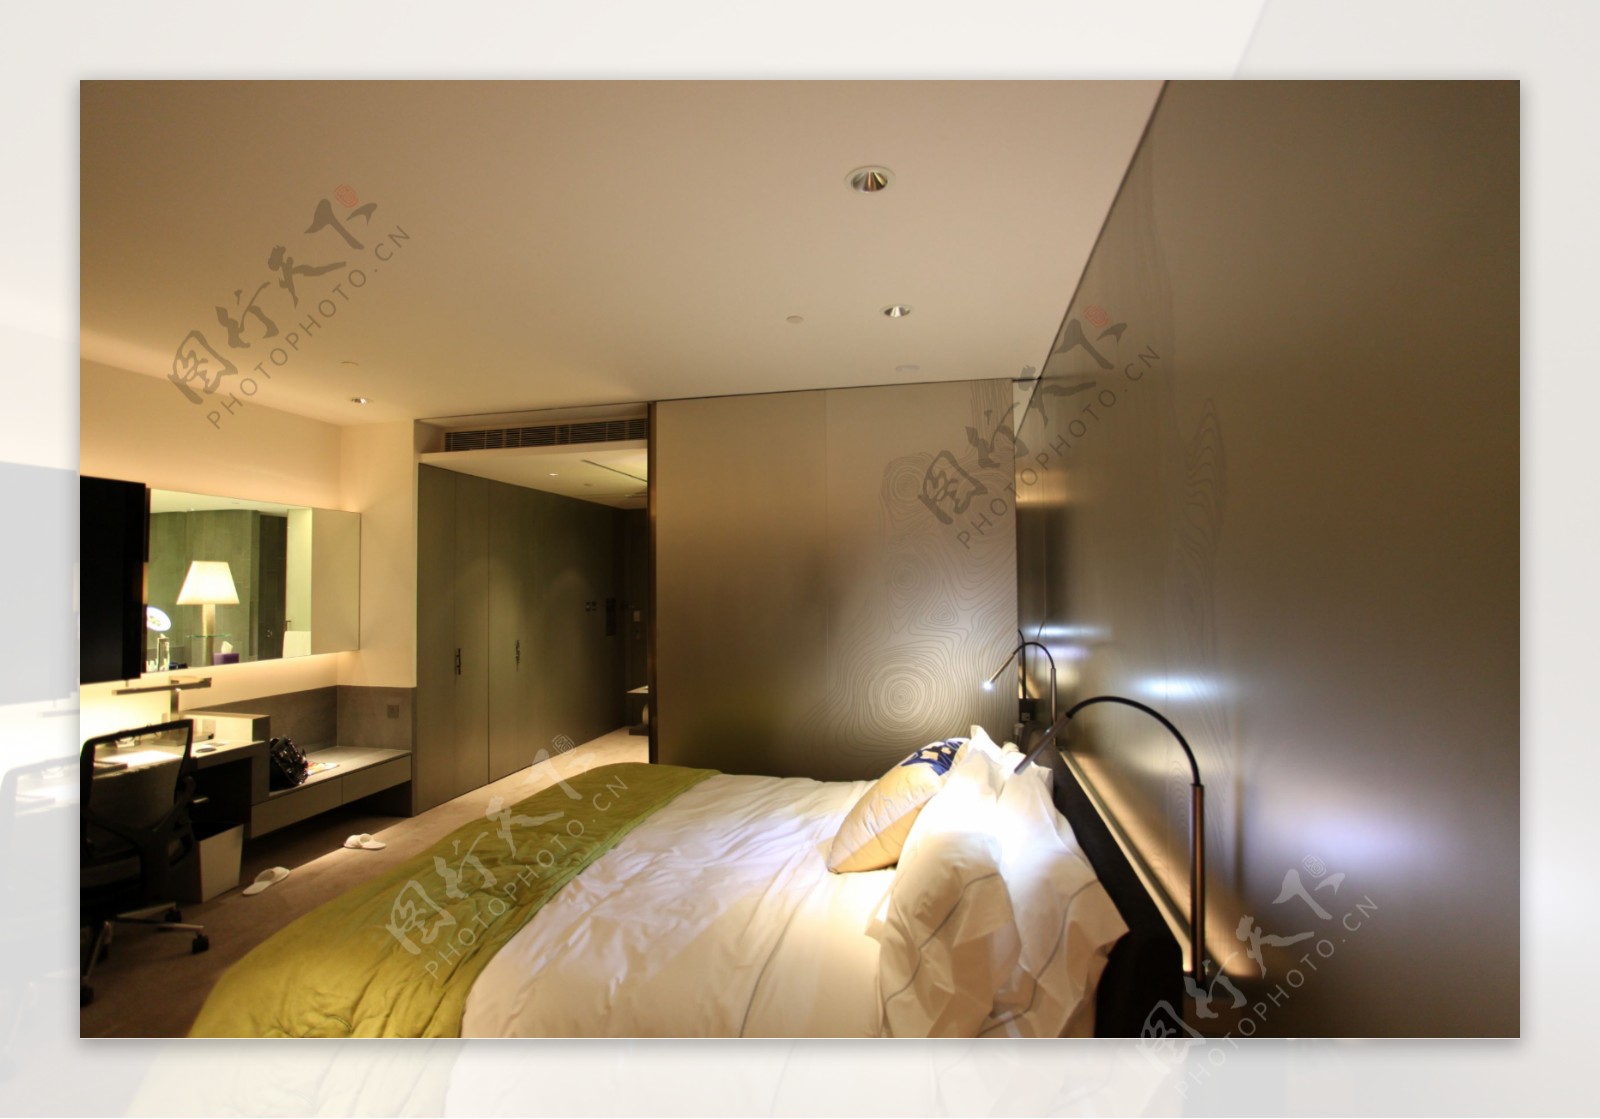 香港W酒店简约客房设计图片